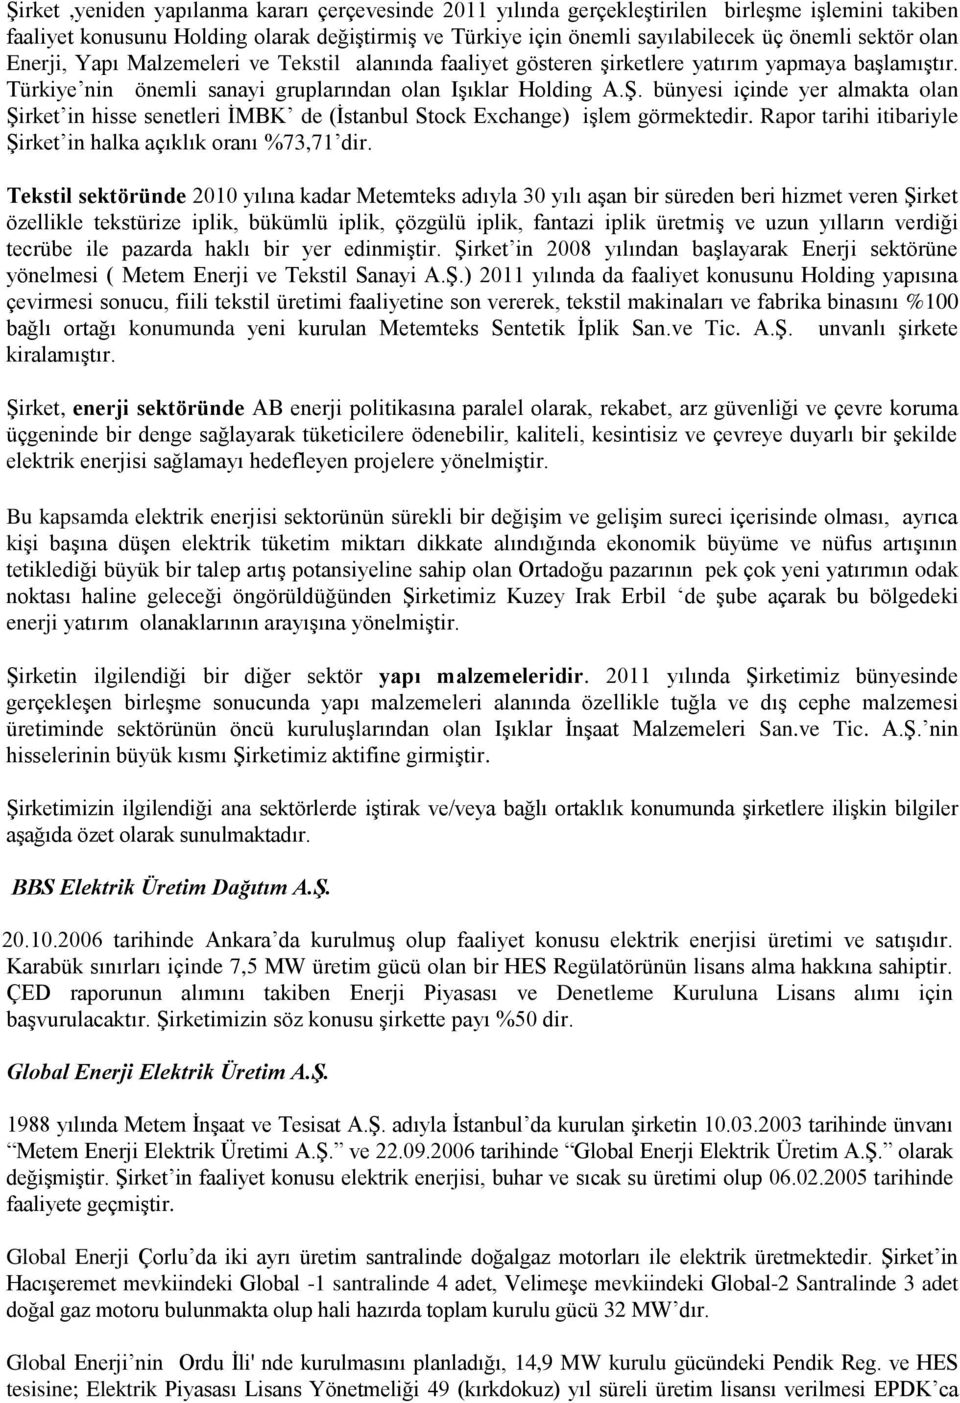 bünyesi içinde yer almakta olan Şirket in hisse senetleri İMBK de (İstanbul Stock Exchange) işlem görmektedir. Rapor tarihi itibariyle Şirket in halka açıklık oranı %73,71 dir.